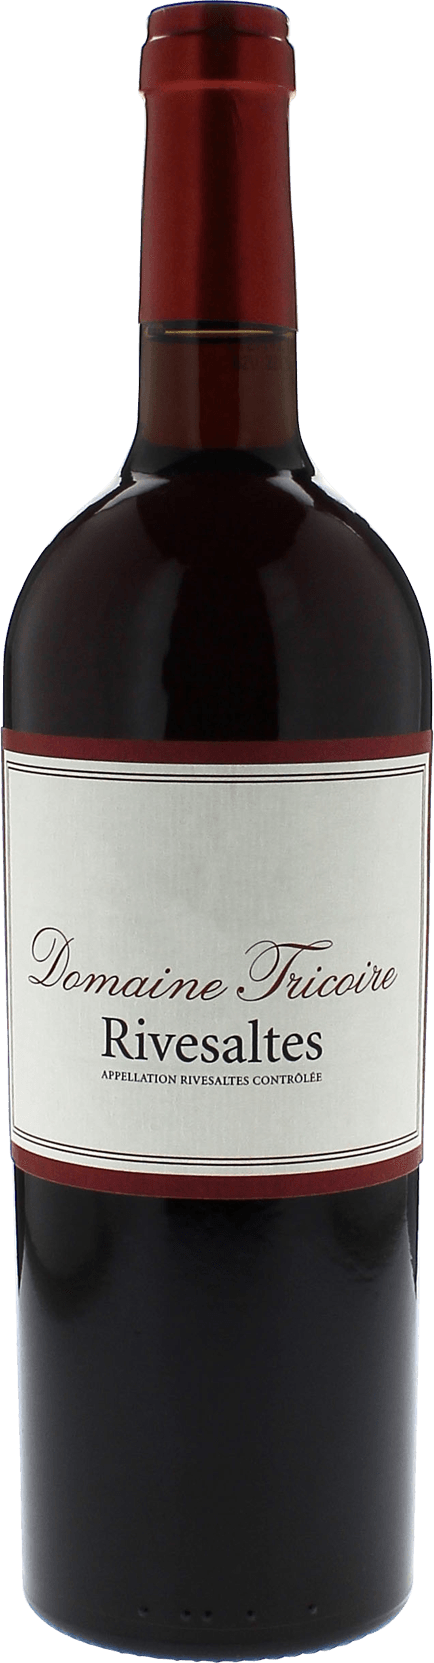 Rivesaltes domaine tricoire 1954 Vin doux naturel Rivesaltes, Vin doux naturel